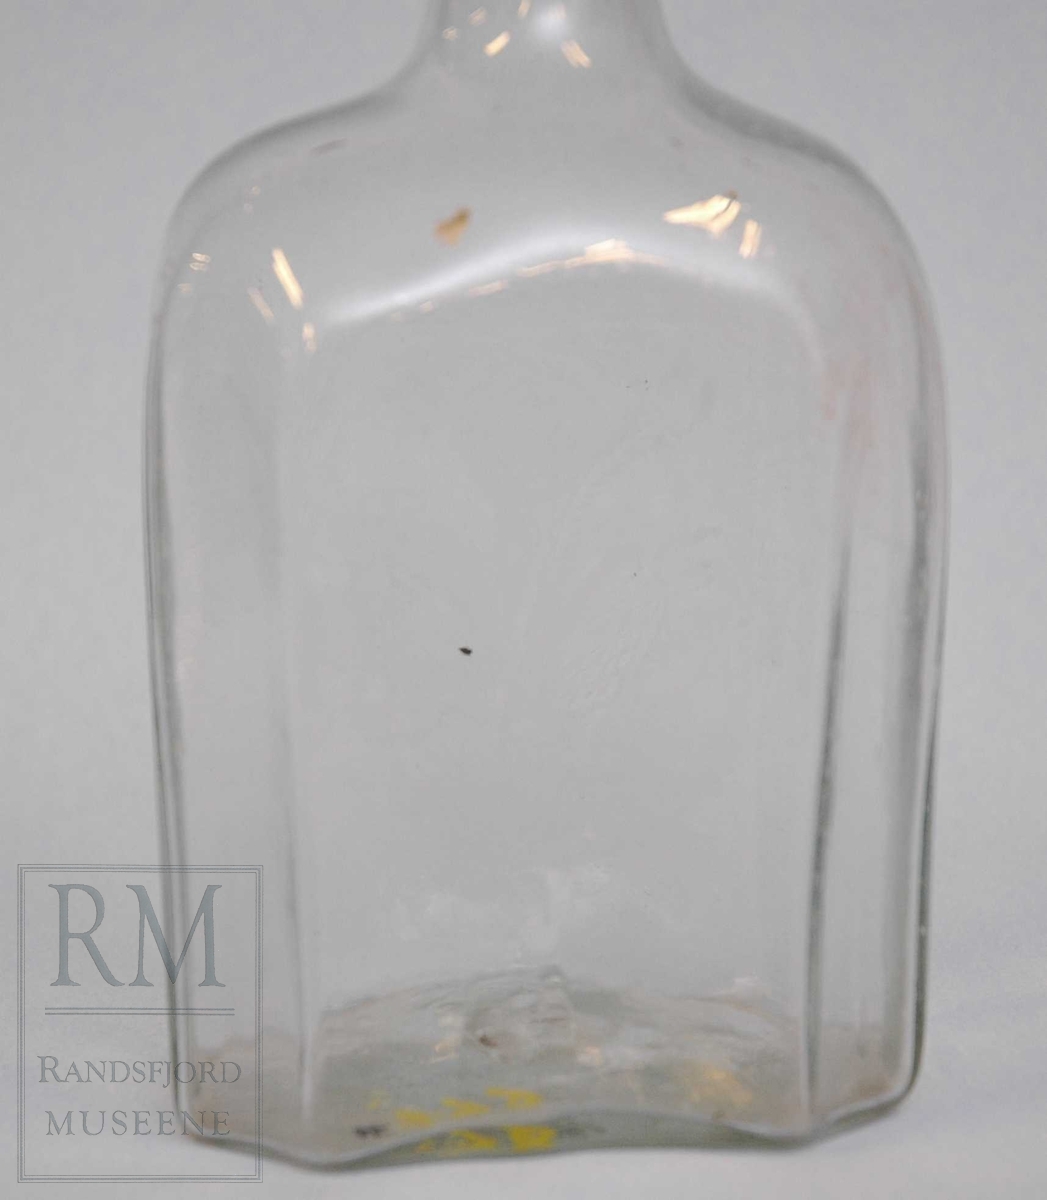 Åttekantet flaske i klart glass. Rørformet hals med ring mot toppen. 
Dekorert med slipte blomster.